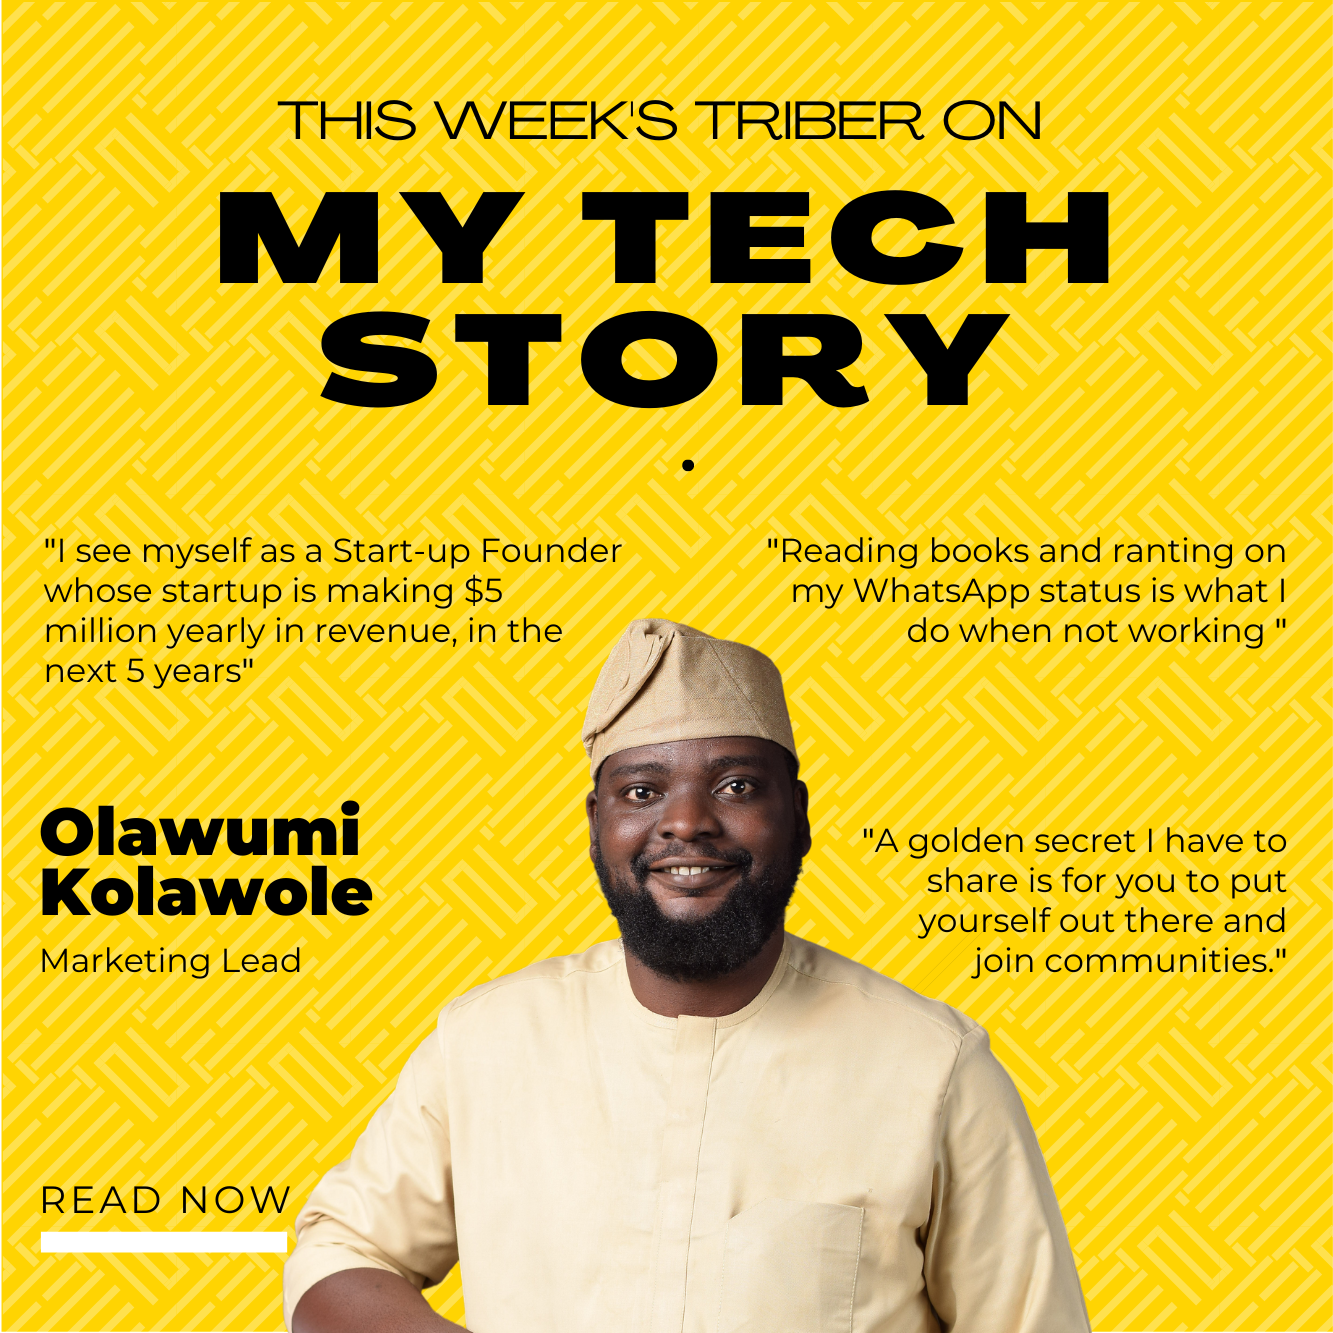 MyTechStory: Meet Olawumi, A Marketing Lead.